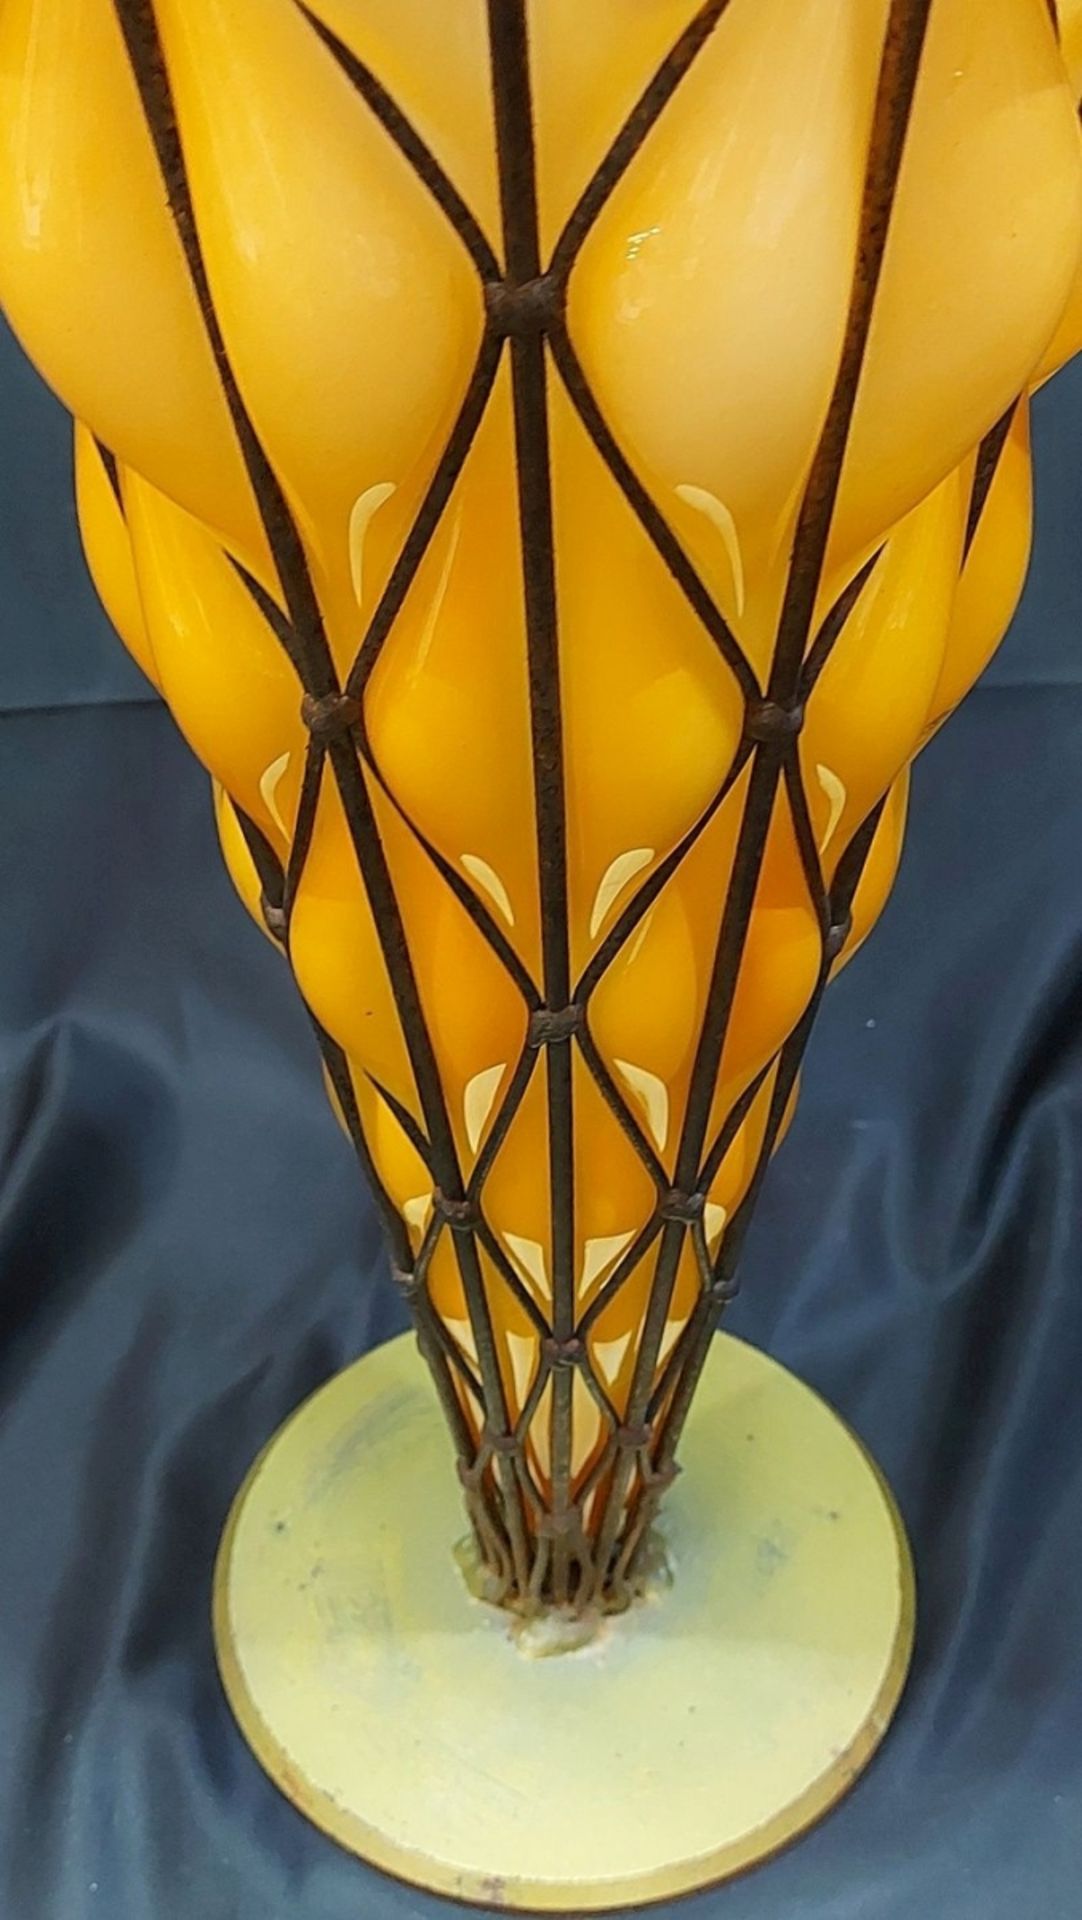 XXL Traumhaft schöne Glas Vase riesige Vase in Metallmontur verm. Murano o. Daum - Bild 6 aus 11